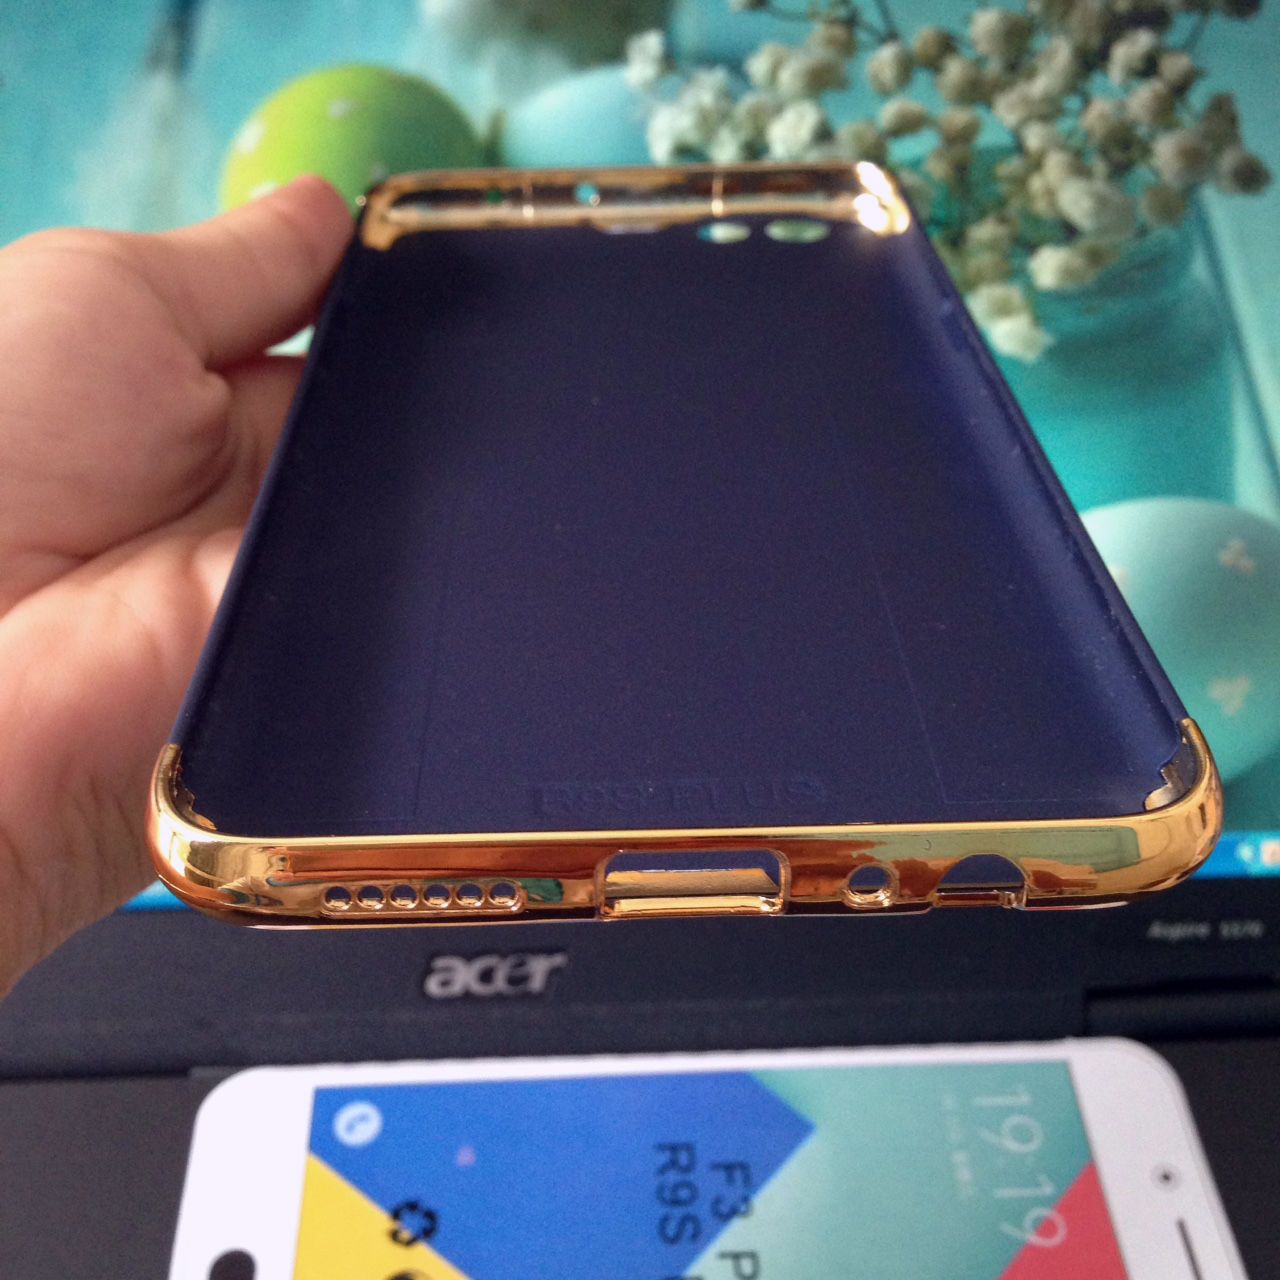  Ốp lưng cứng màu viền vàng 2 đầu Oppo F3 Plus (R9s Plus) 